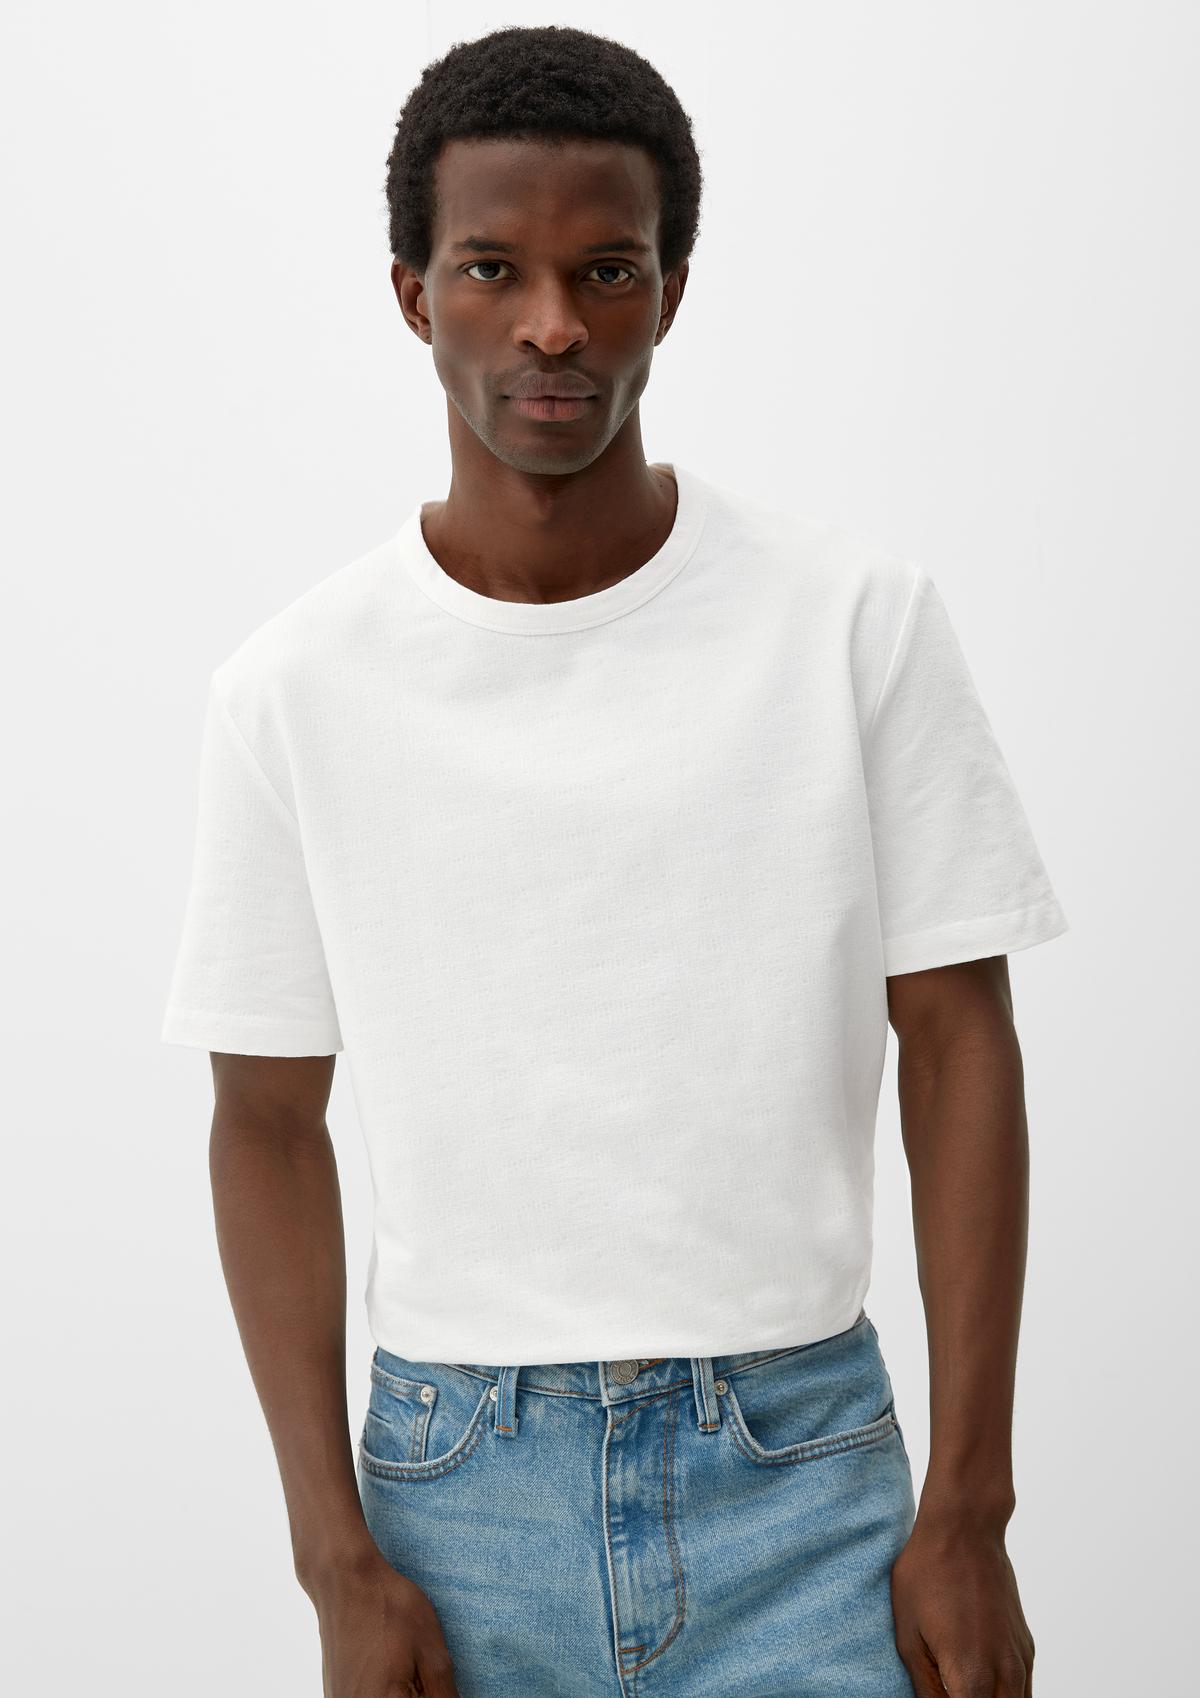 T-shirt white - Seersucker